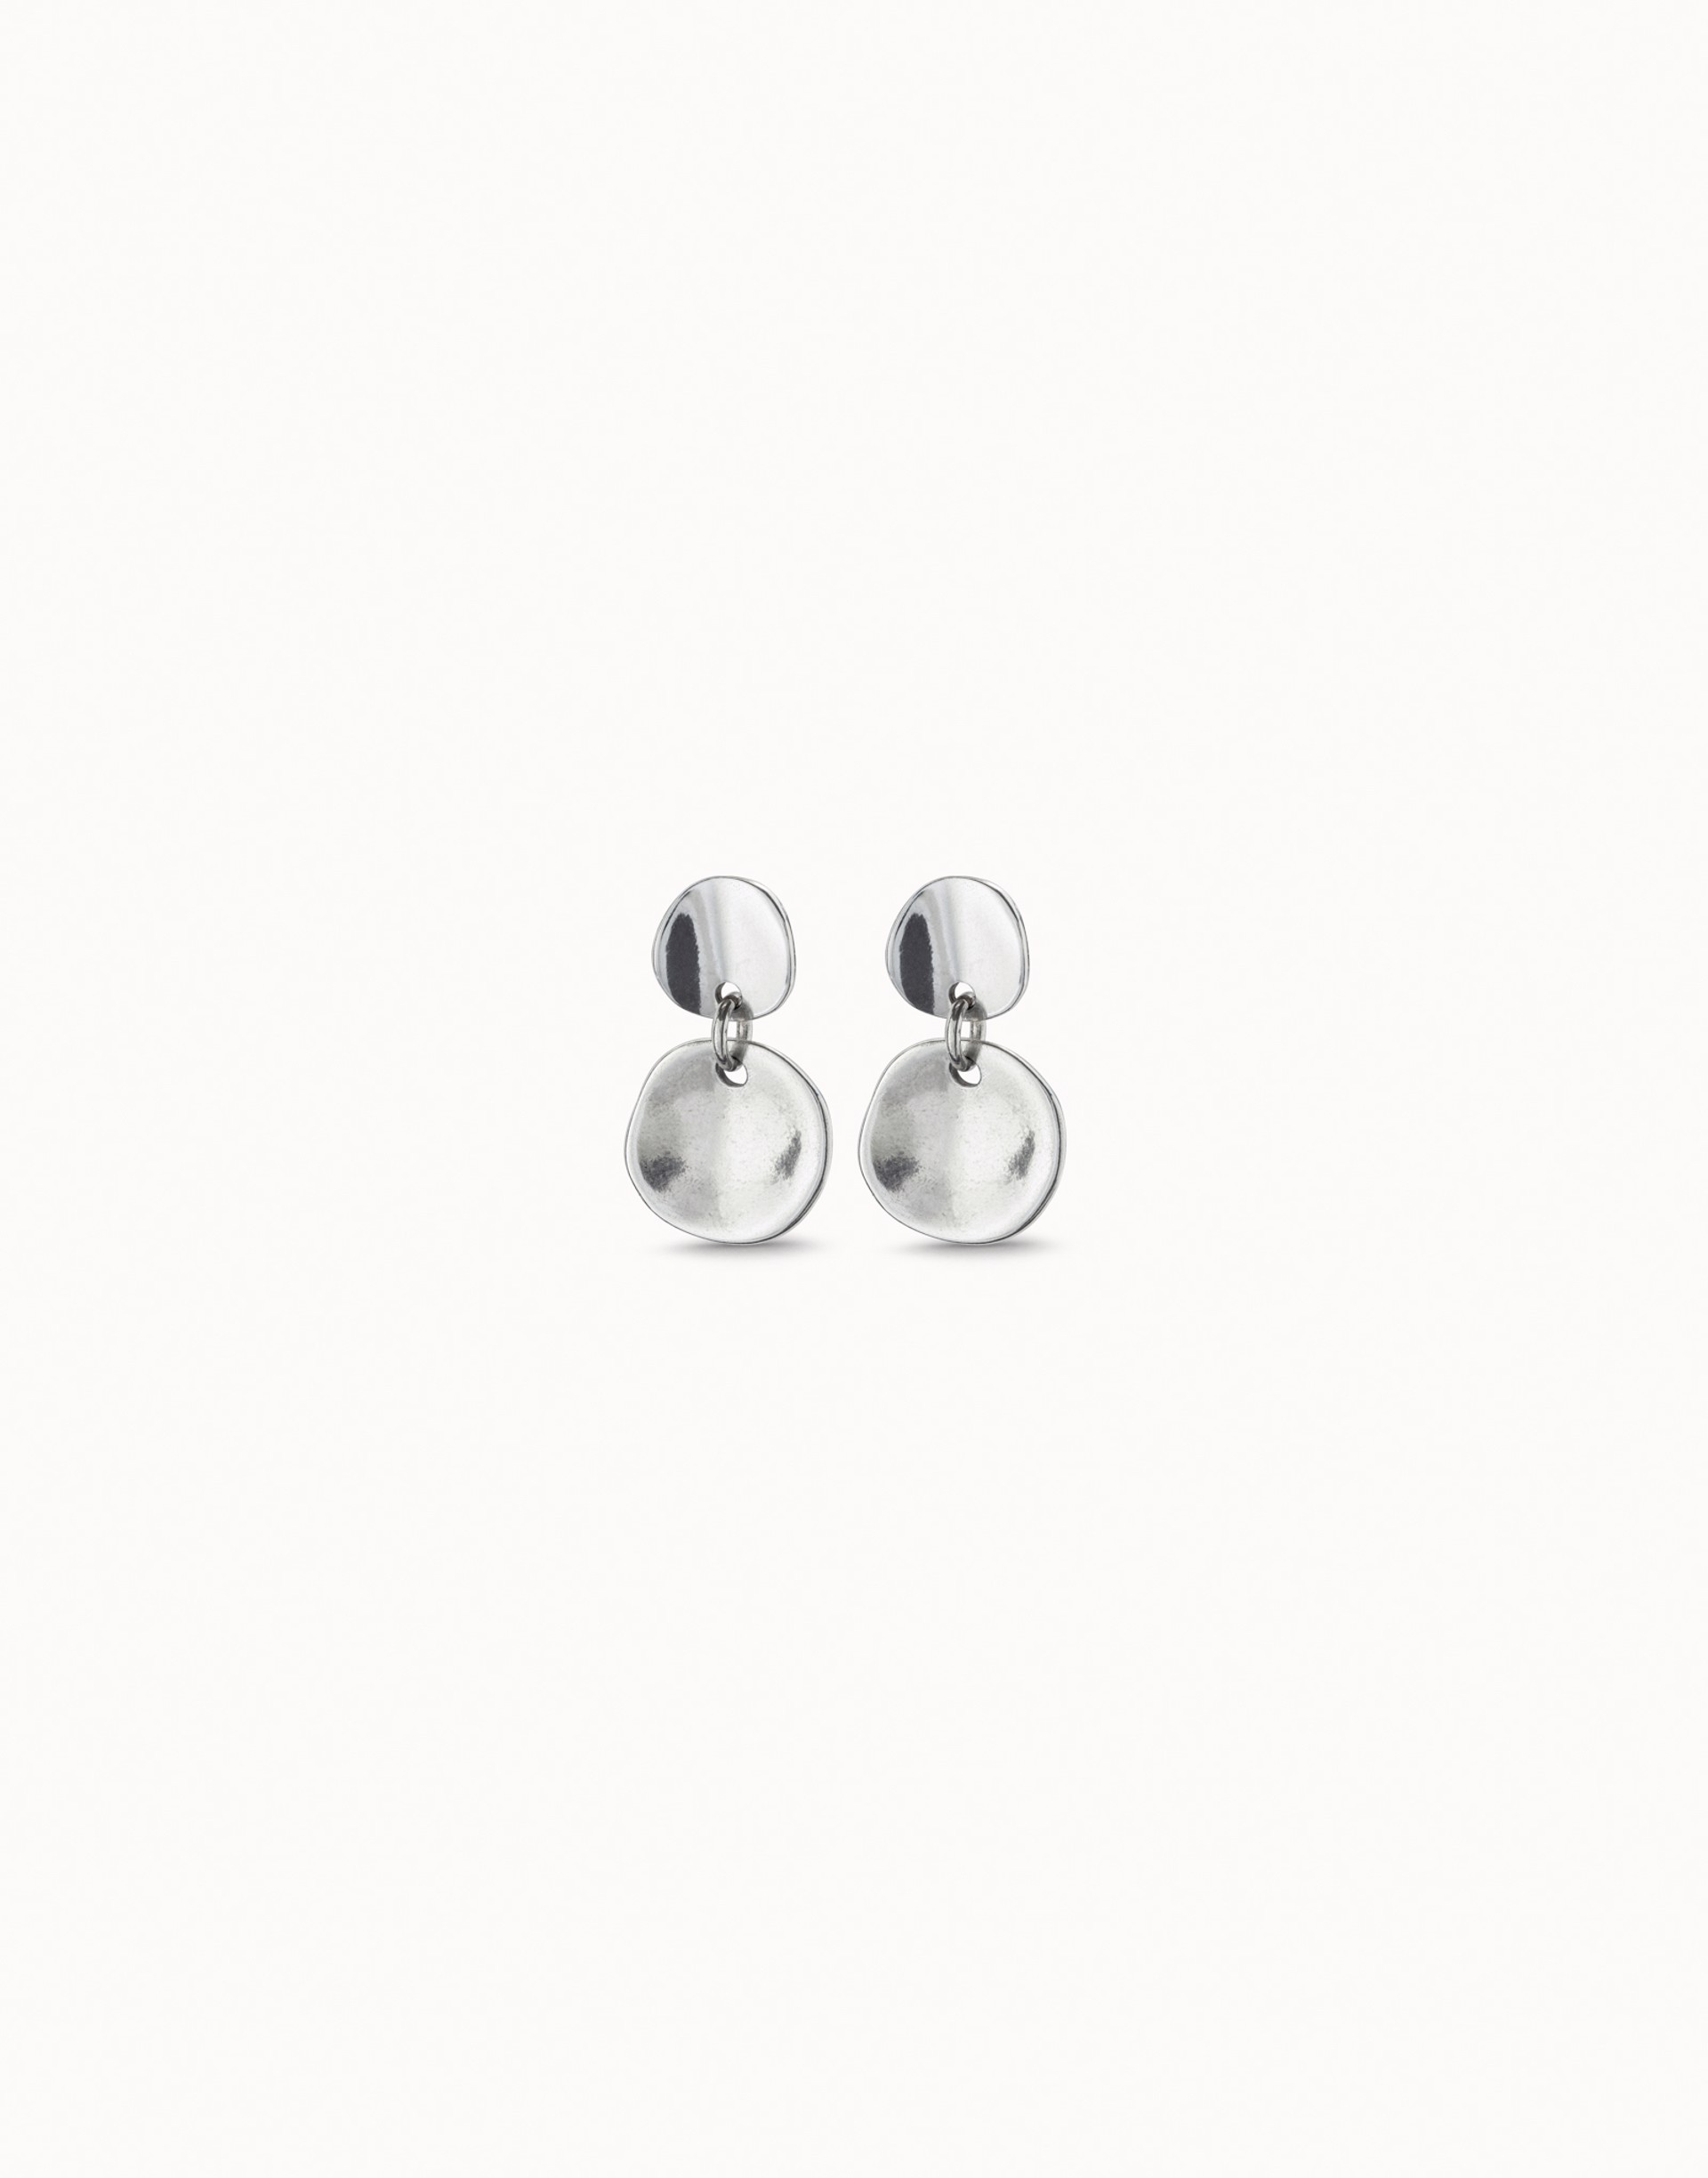 5284 Scales Earrings by UNO DE 50